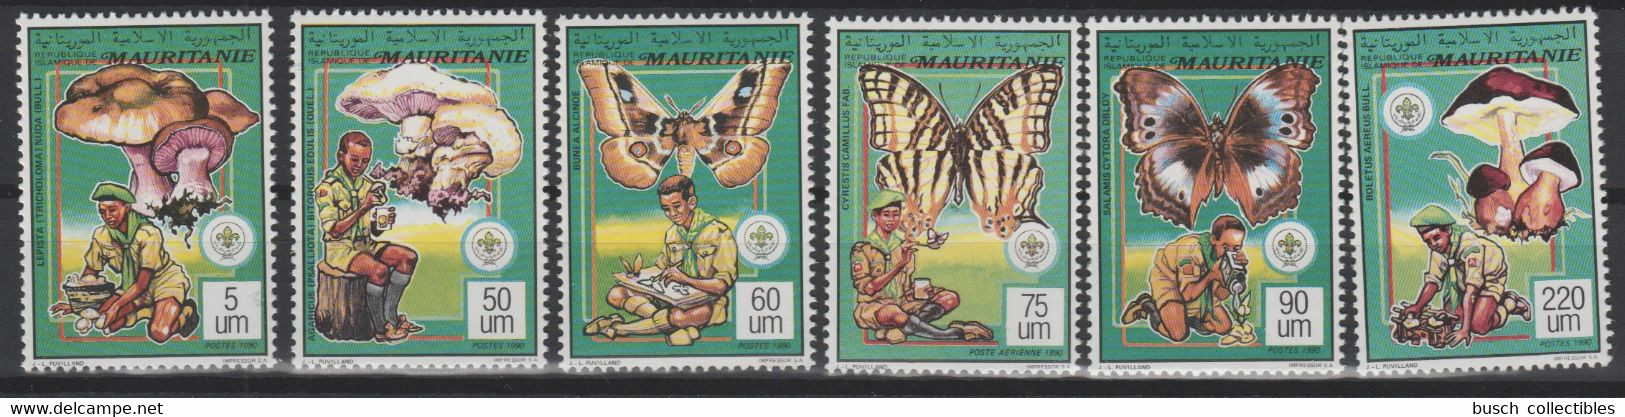 Mauritanie Mauretanien Mauritania 1990 / 1991 Mi. 987 - 992 Scoutisme Scouts Pfadfinder Papillon Schmetterling Butterfly - Mauritanie (1960-...)